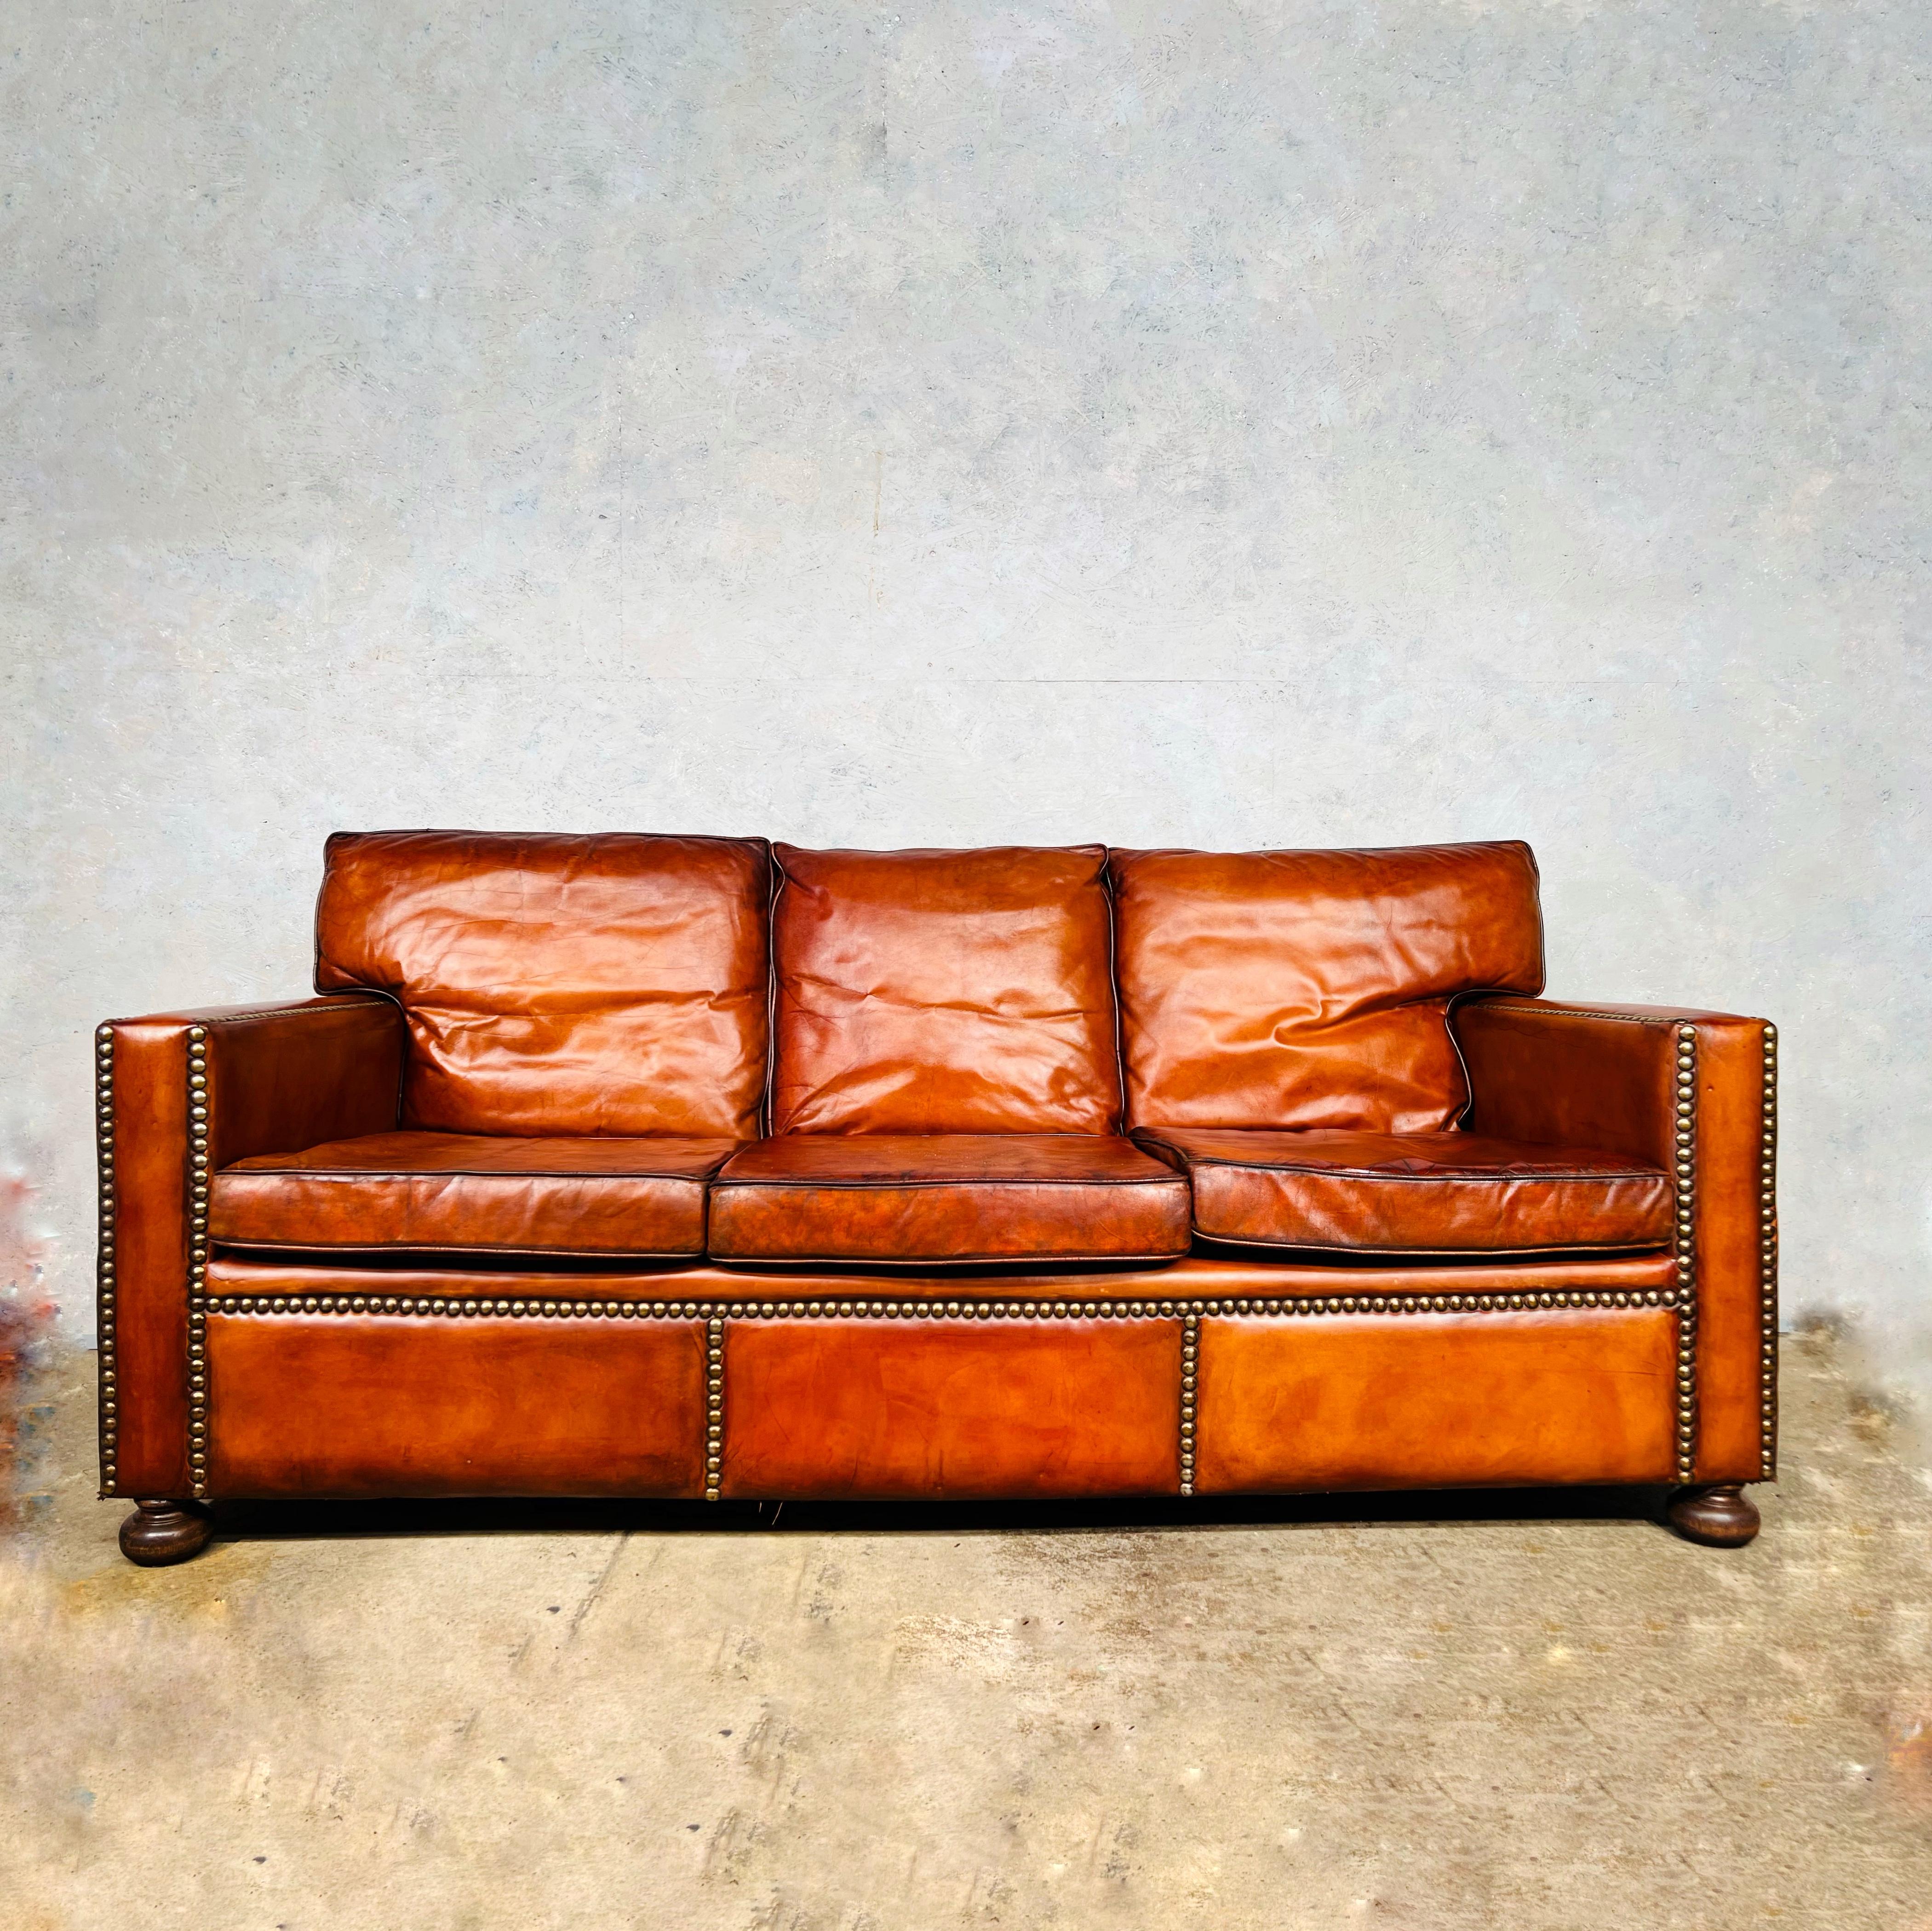 Atemberaubende Englisch Mitte des Jahrhunderts kastanienbraun Leder beschlagene Dreisitzer-Sofa.

Sehr stilvoll mit einer schönen Form mit großer Qualität Leder und Federn gefüllte Kissen, in großen Vintage-Zustand, restauriert und von Hand